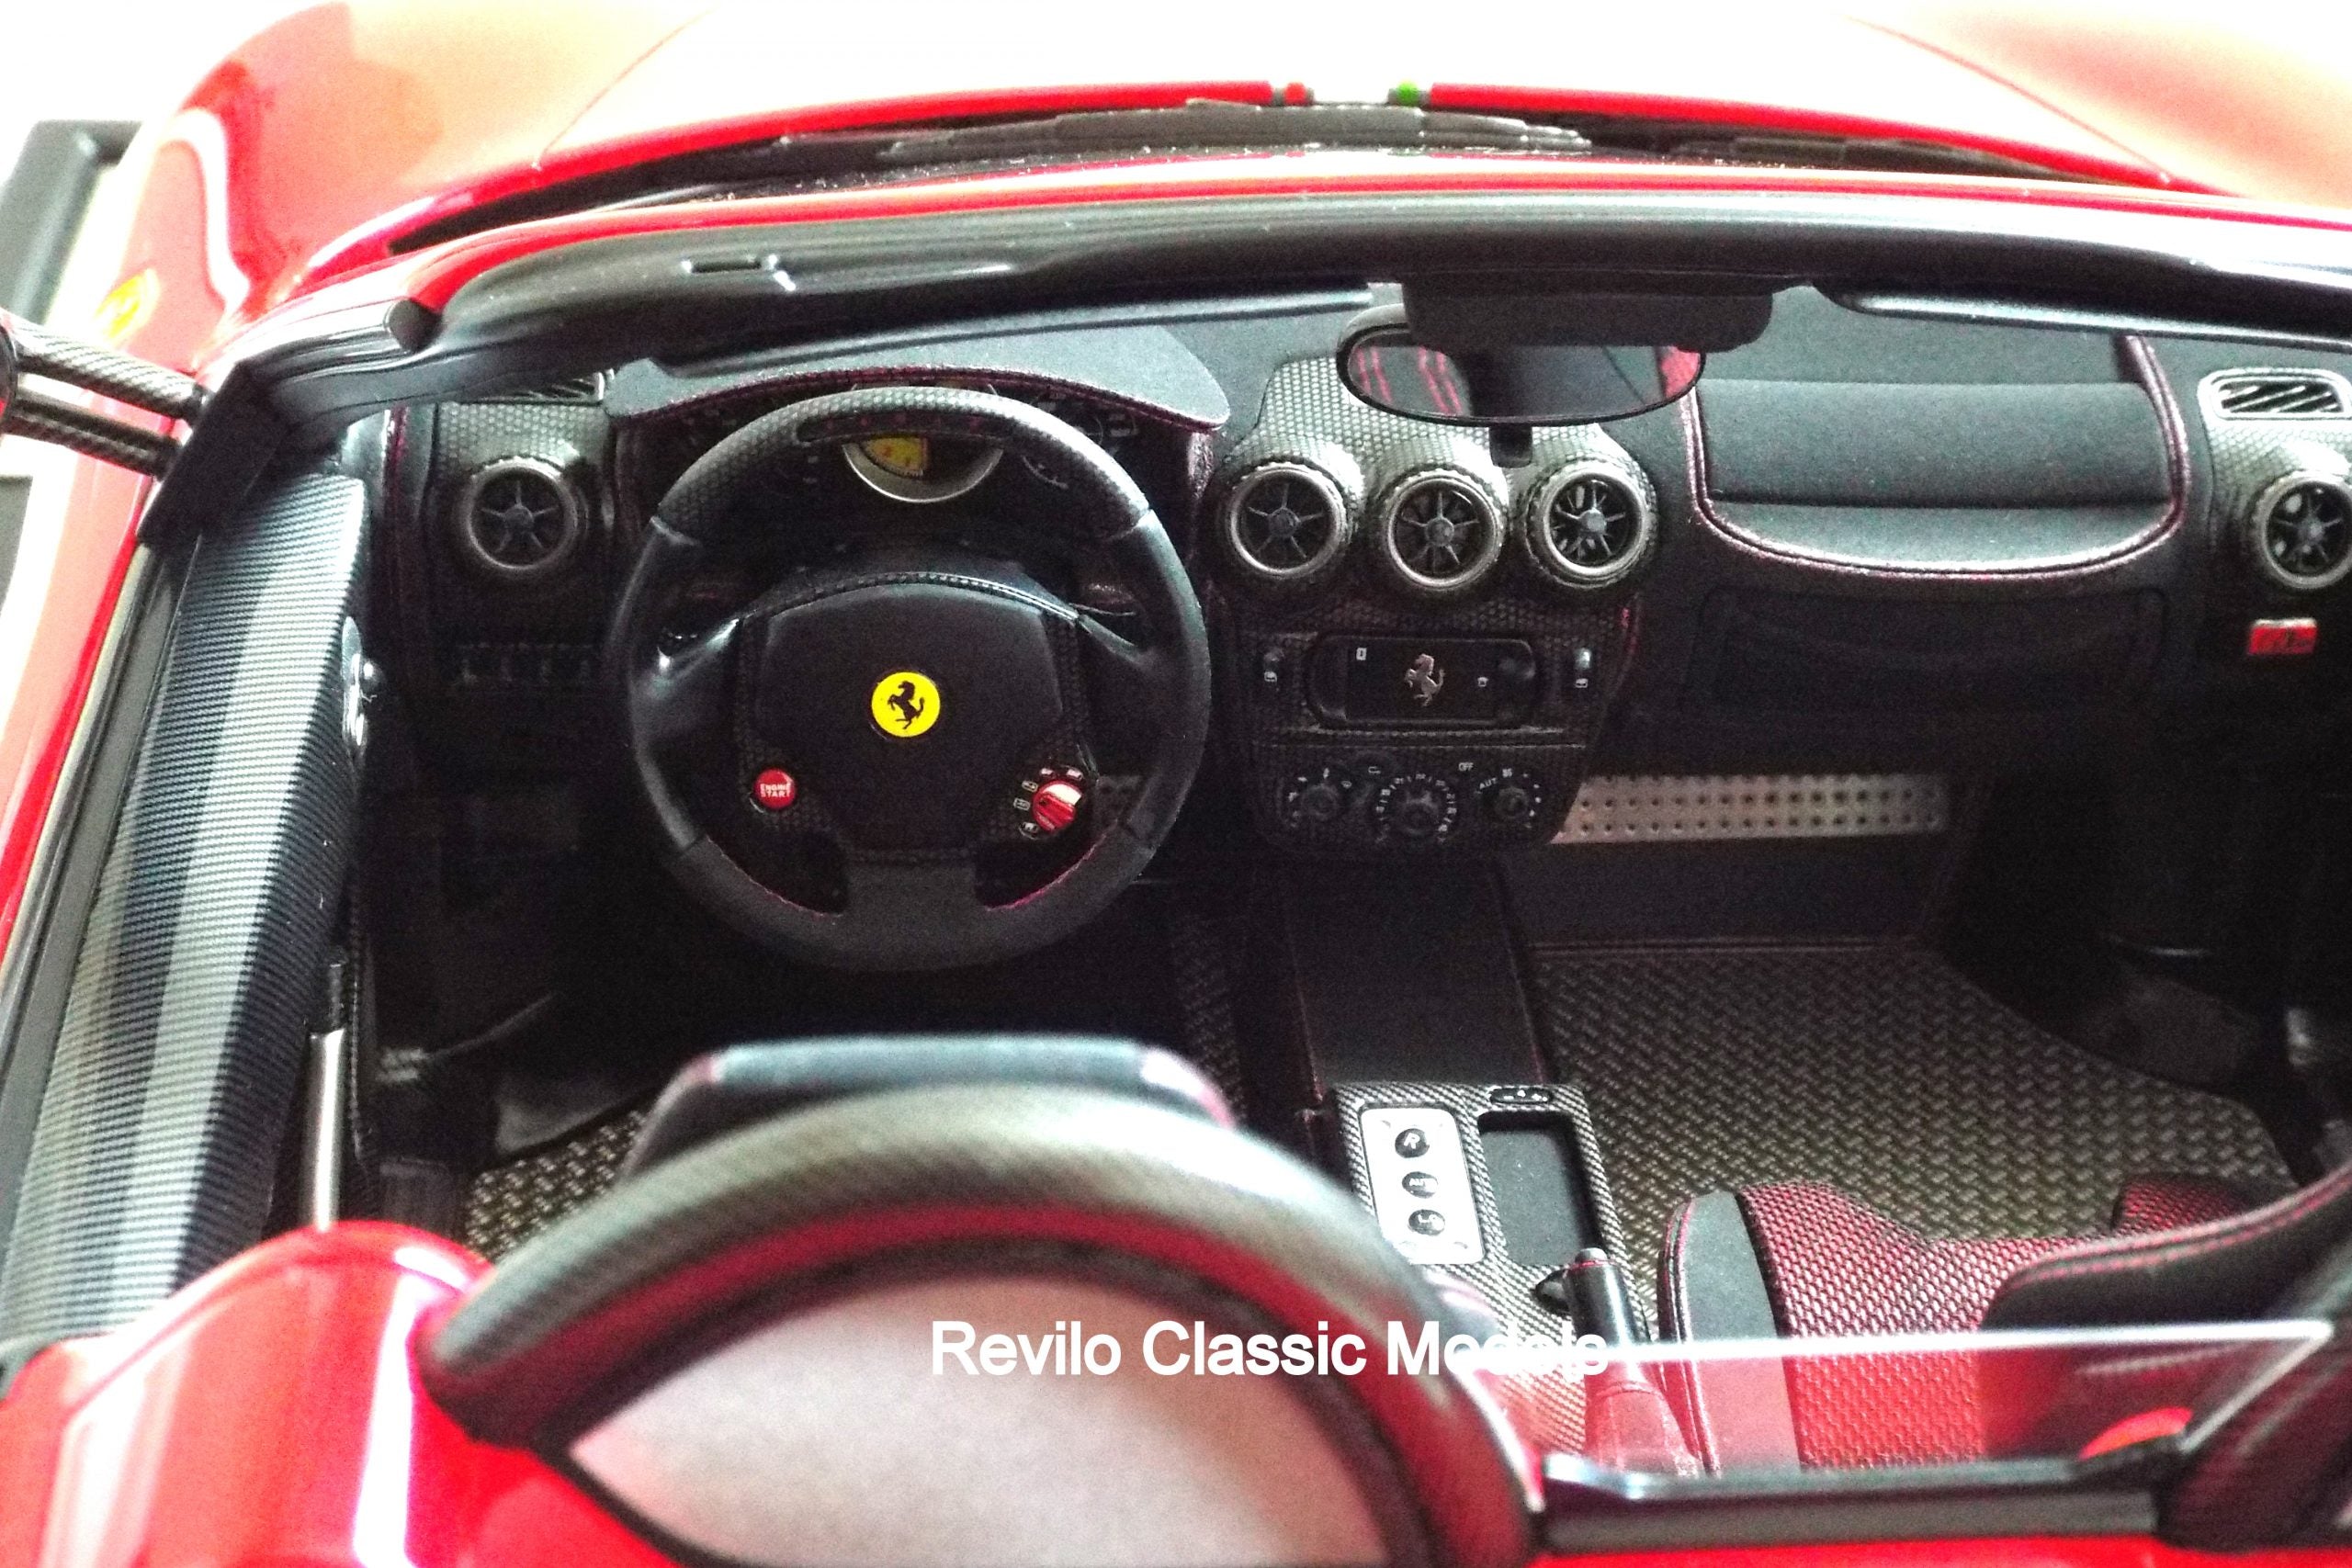 Amalgam 1:8 scale Ferrari F430